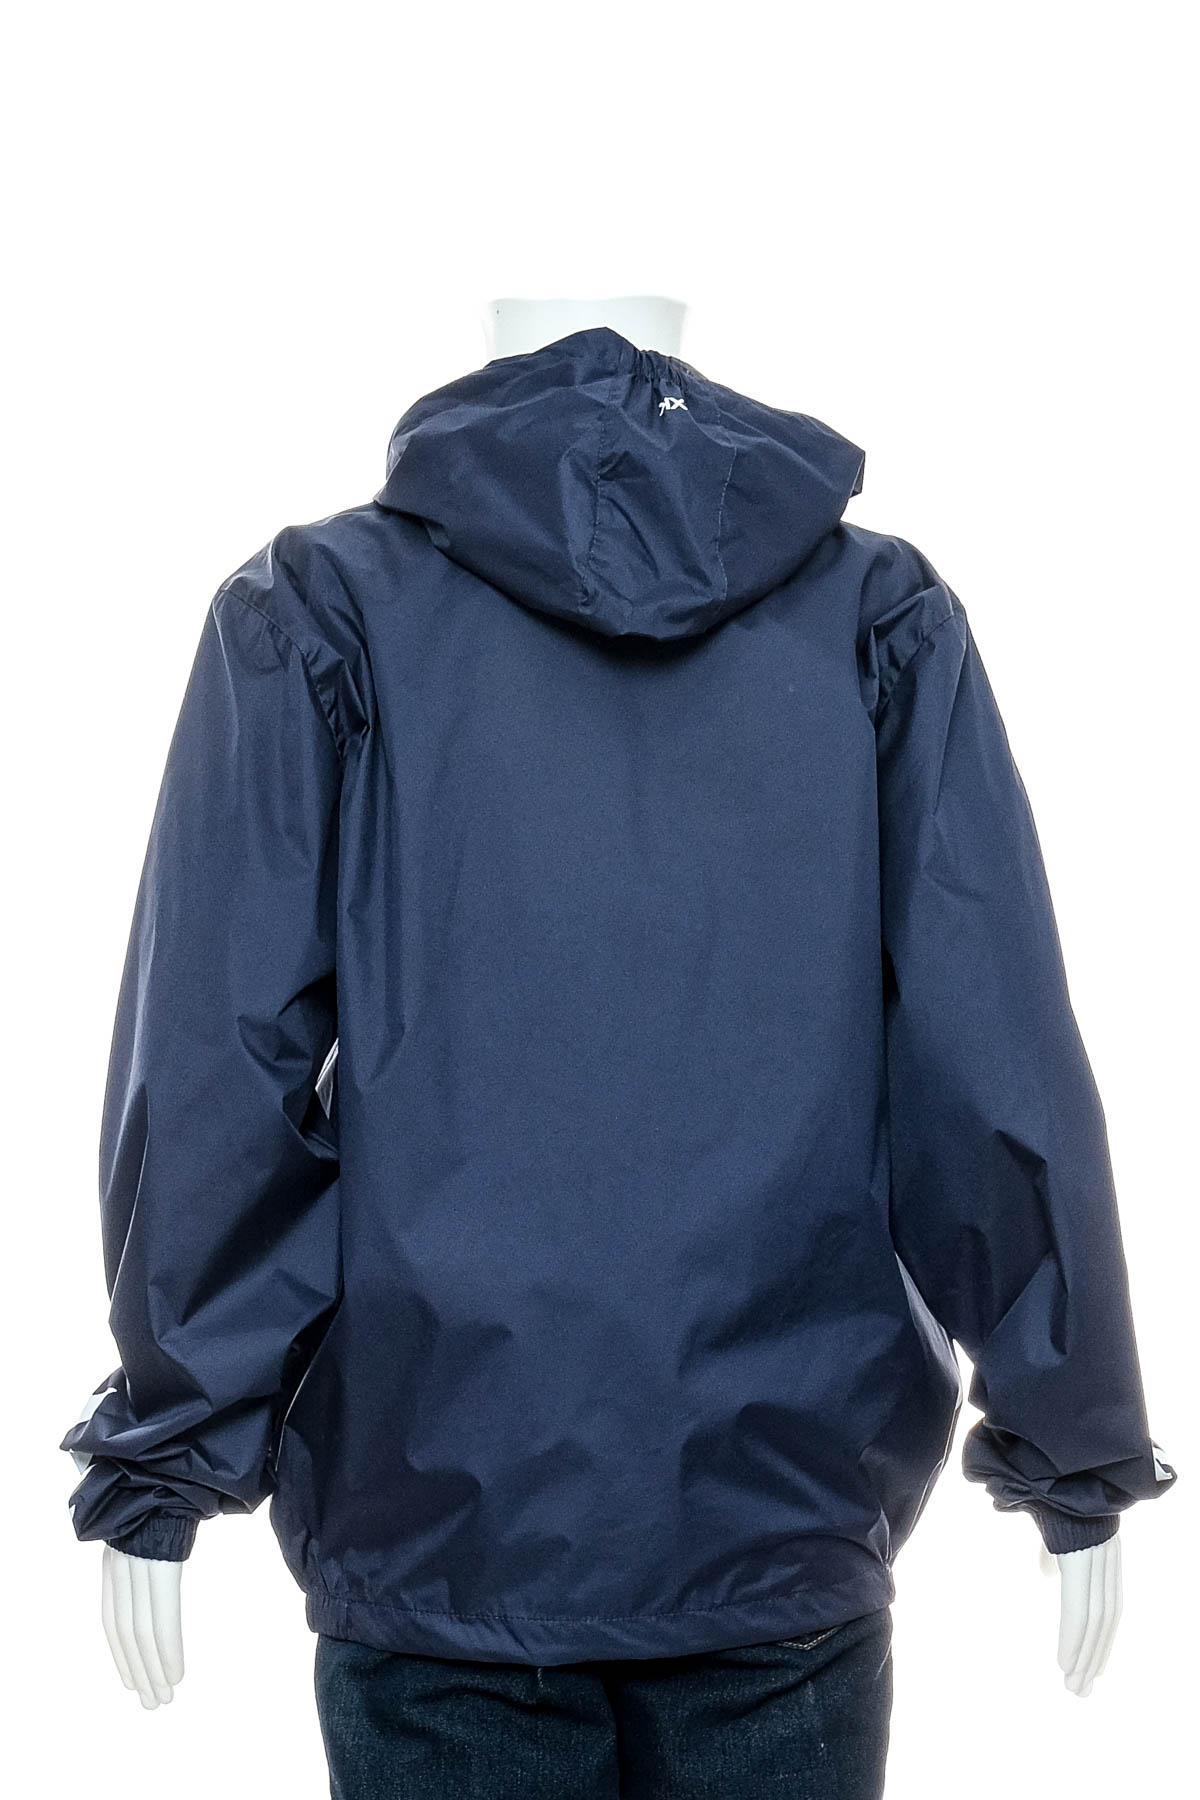 Boy's jacket - Hummel - 1